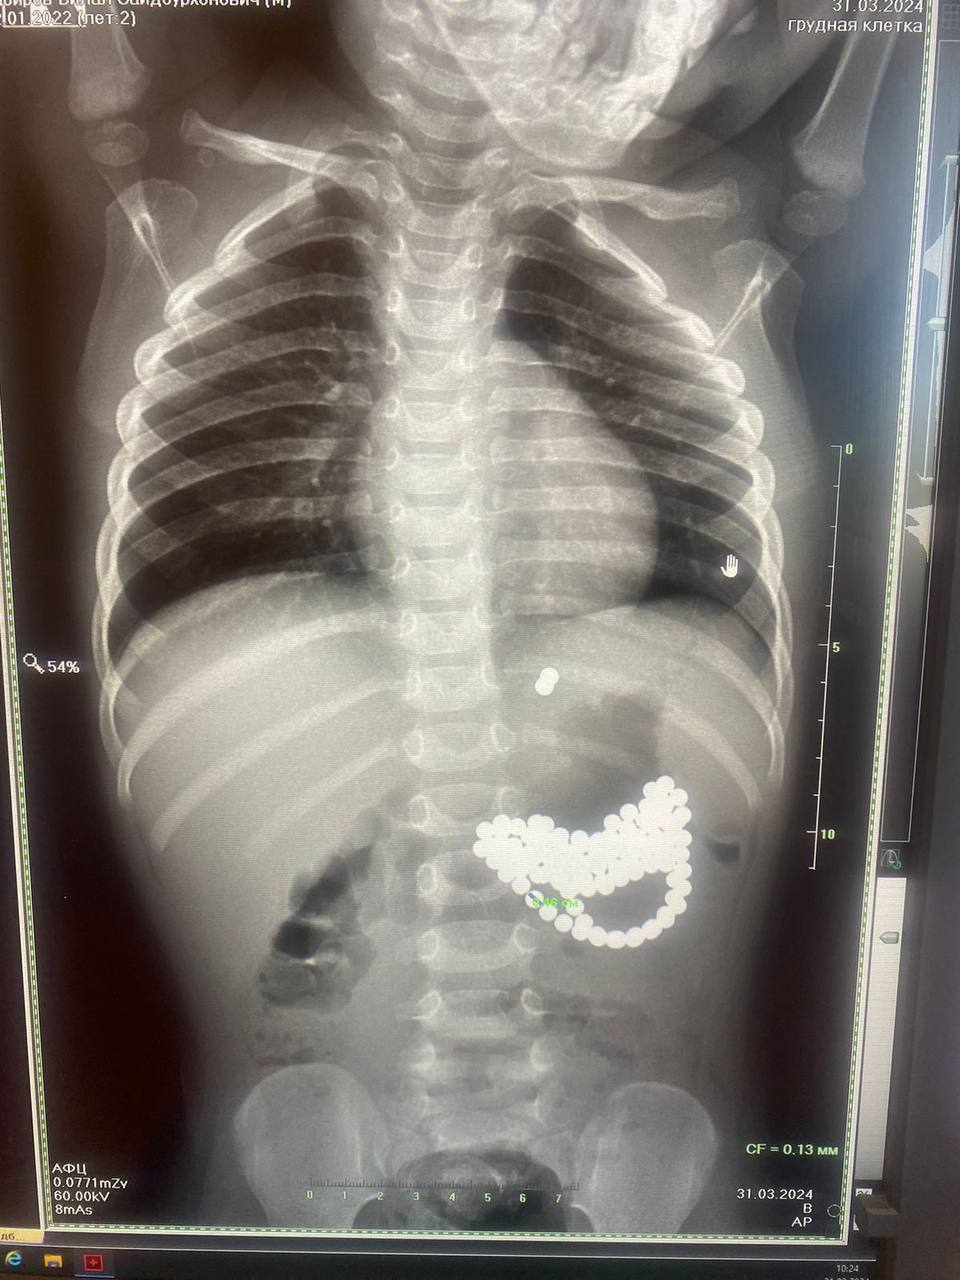 Врачи ДОКБ извлекли из желудка и кишечника двухлетнего ребёнка 124 магнитных шарика